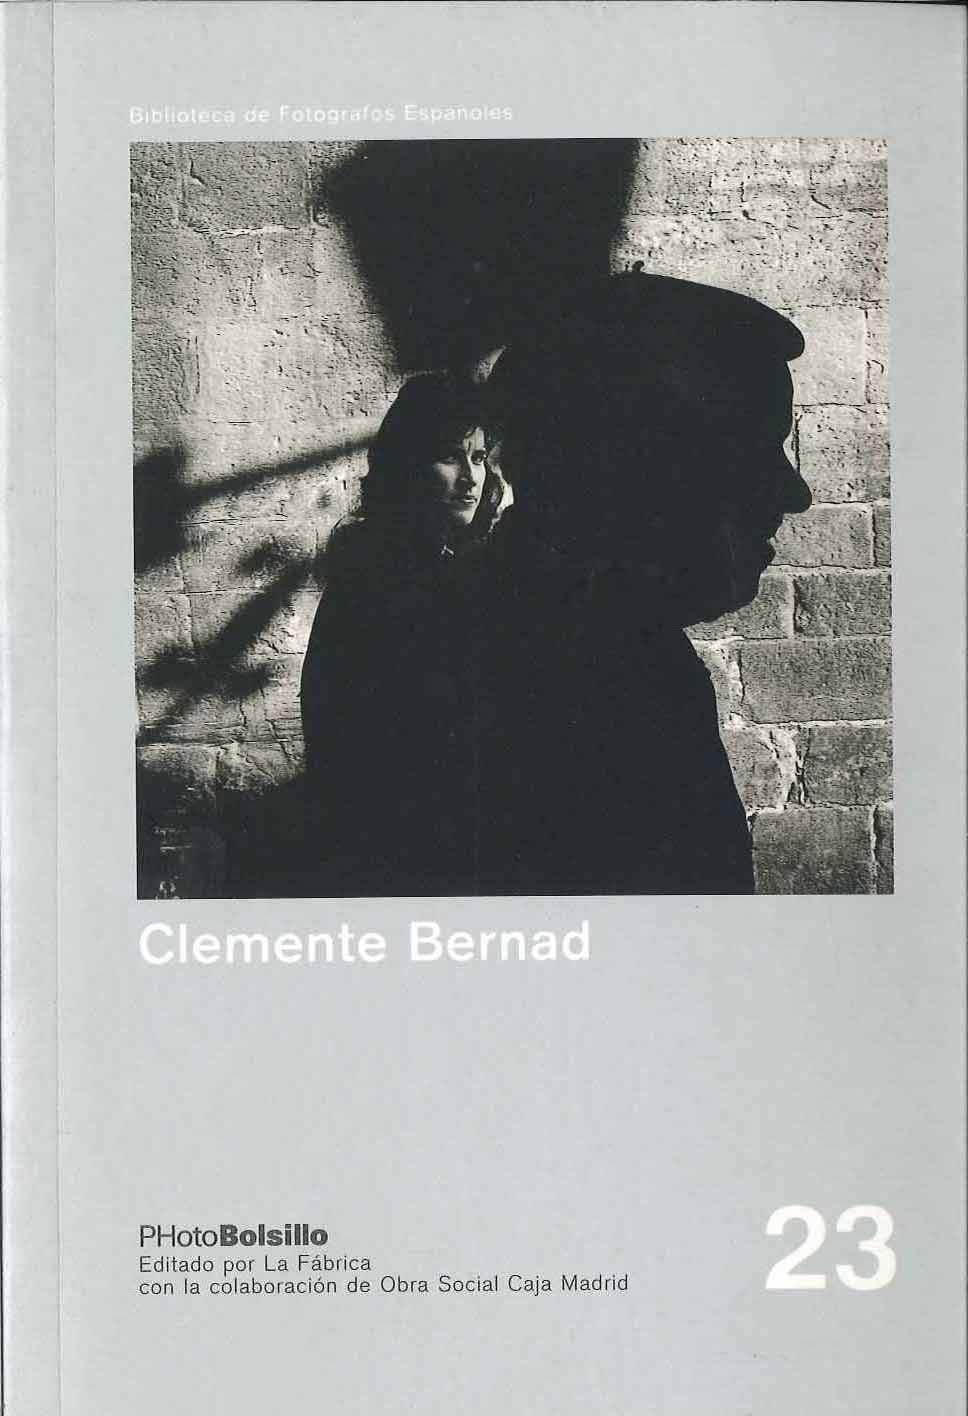 Clemente Bernad